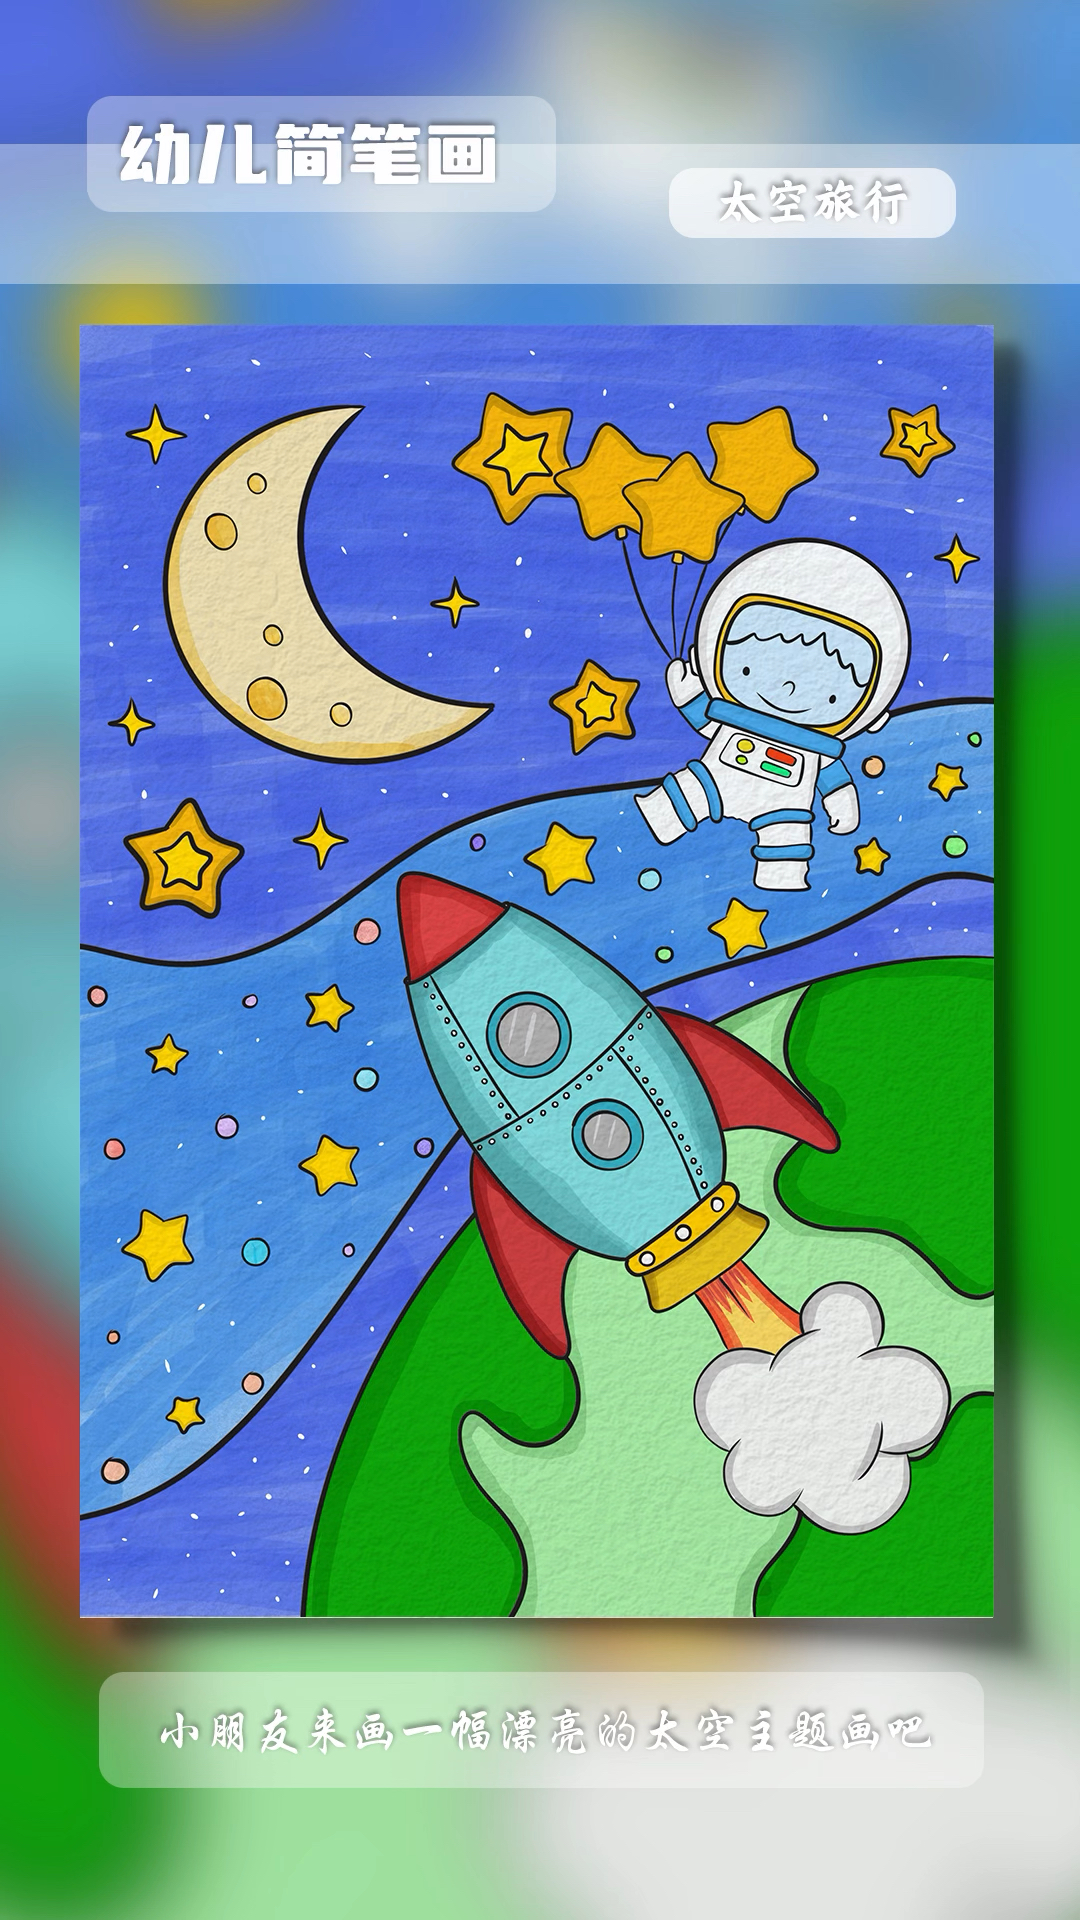 太空主题幼儿主题画喜欢的一起来画画吧简笔画幼儿简笔画亲子简笔画